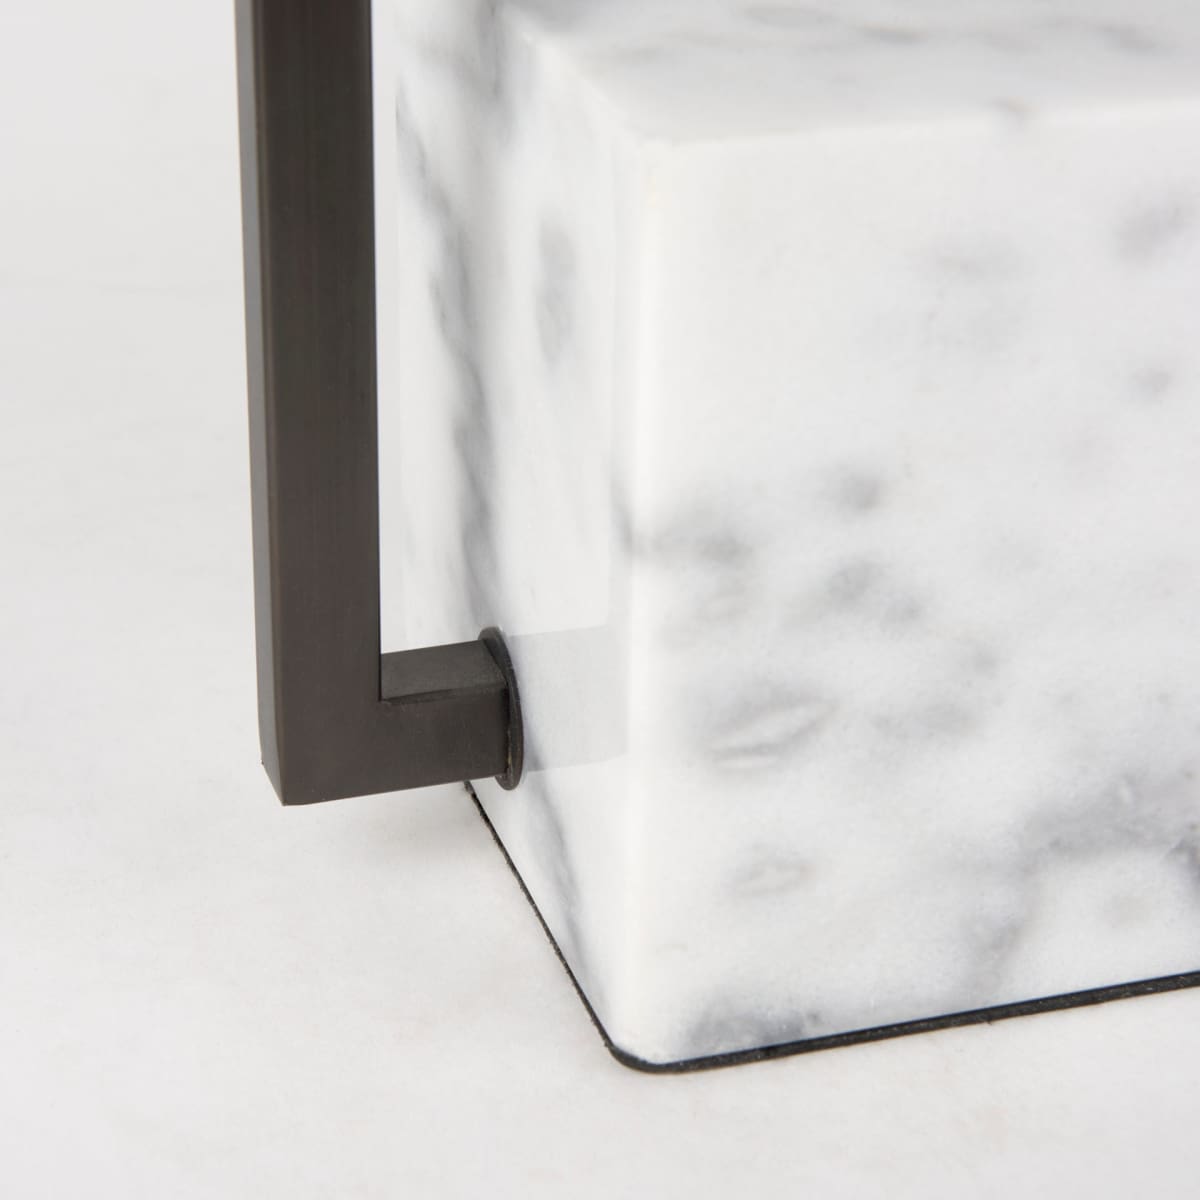 Peyton Lamp Black Metal | White Shade - table-lamps